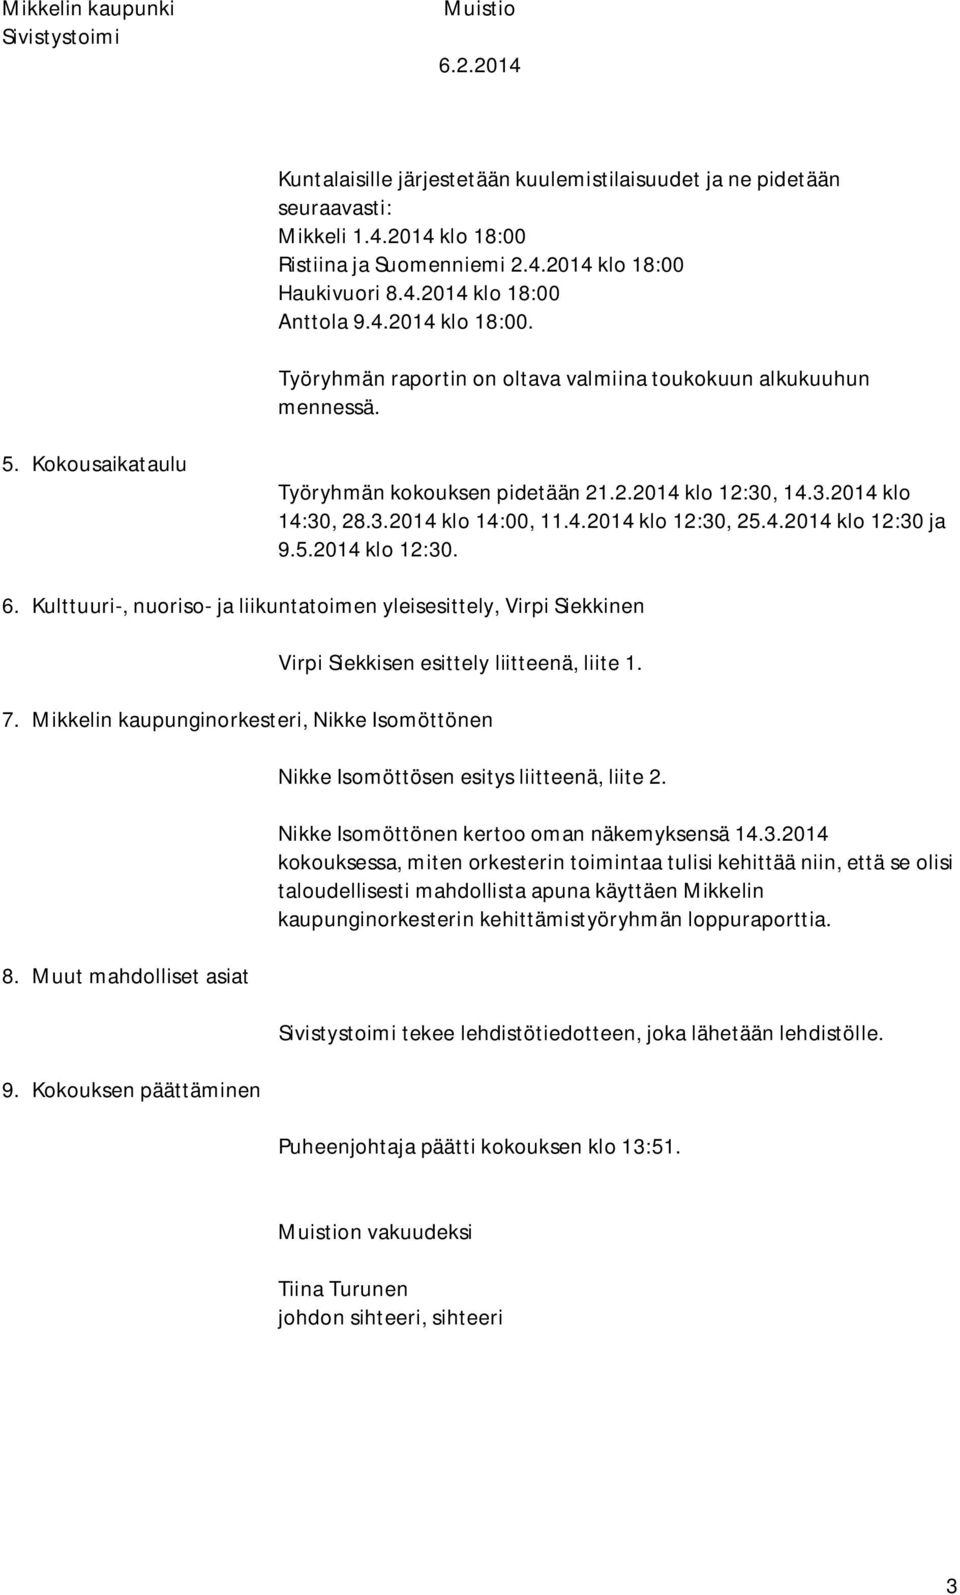 3.2014 klo 14:00, 11.4.2014 klo 12:30, 25.4.2014 klo 12:30 ja 9.5.2014 klo 12:30. 6. Kulttuuri-, nuoriso- ja liikuntatoimen yleisesittely, Virpi Siekkinen Virpi Siekkisen esittely liitteenä, liite 1.